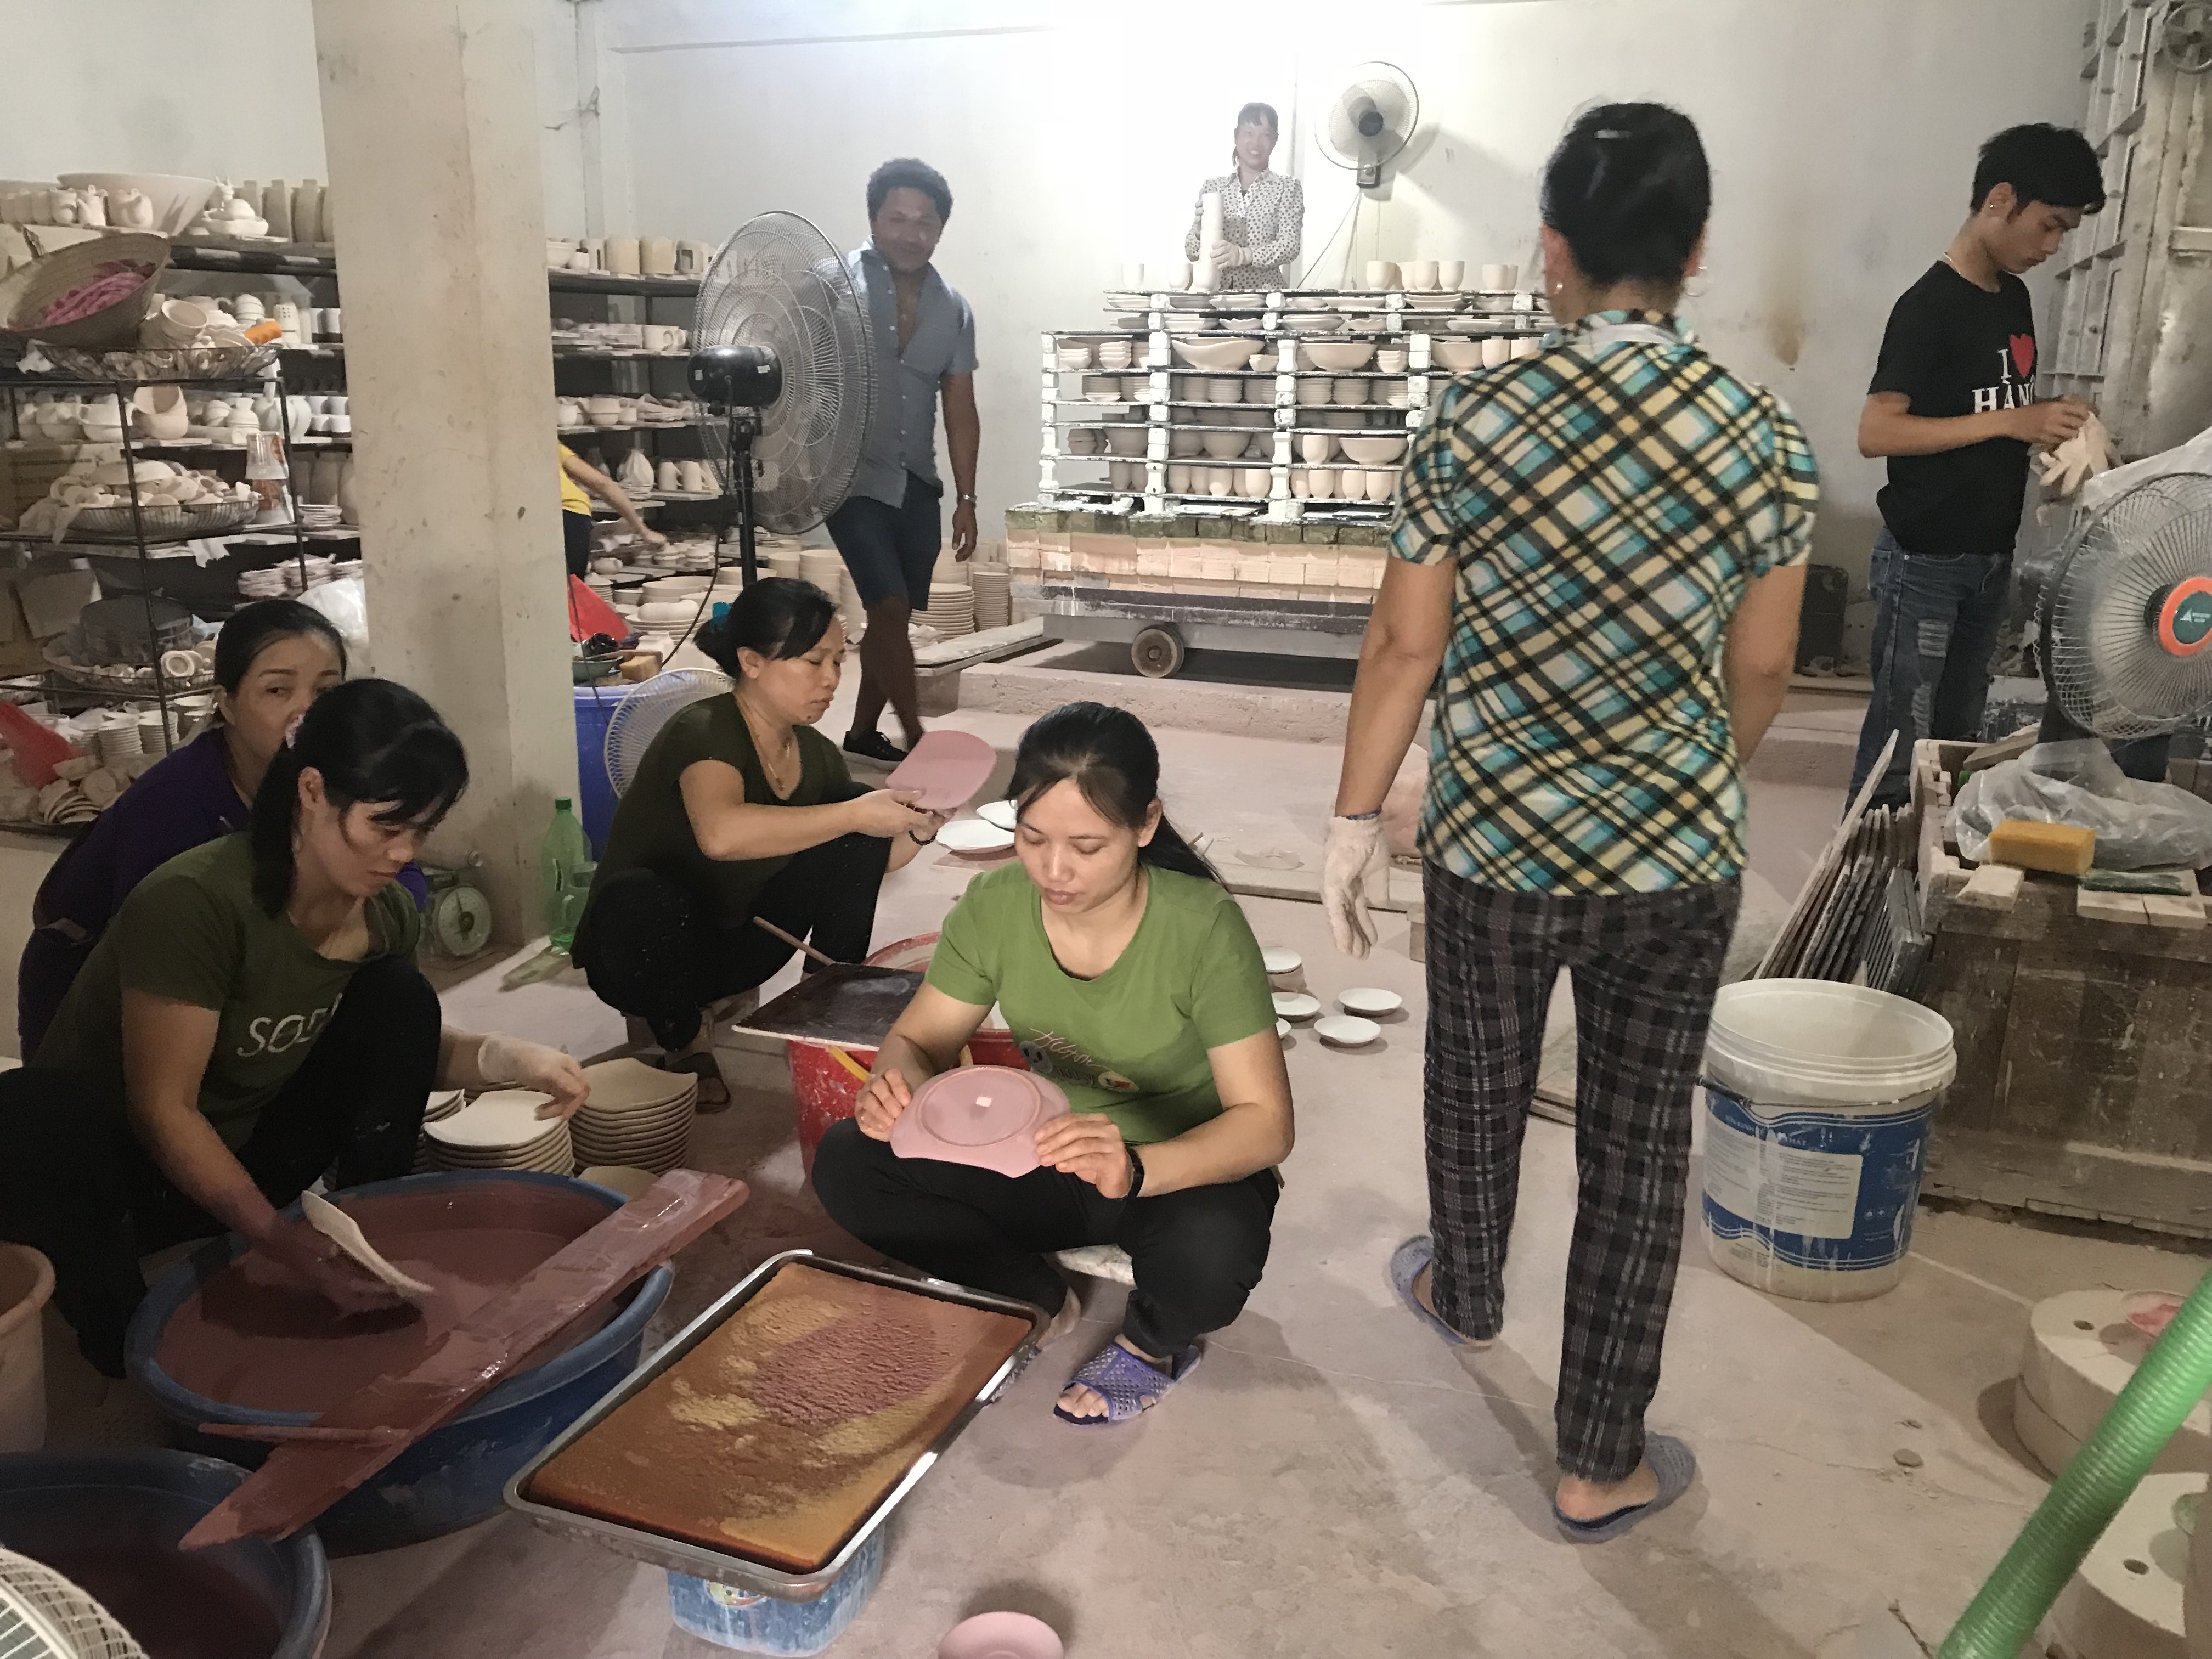 Our bat trang ceramics proudcts - Giới thiệu sản phẩm gốm sứ xưởng sản xuất Gia Oanh Authentic bat trang